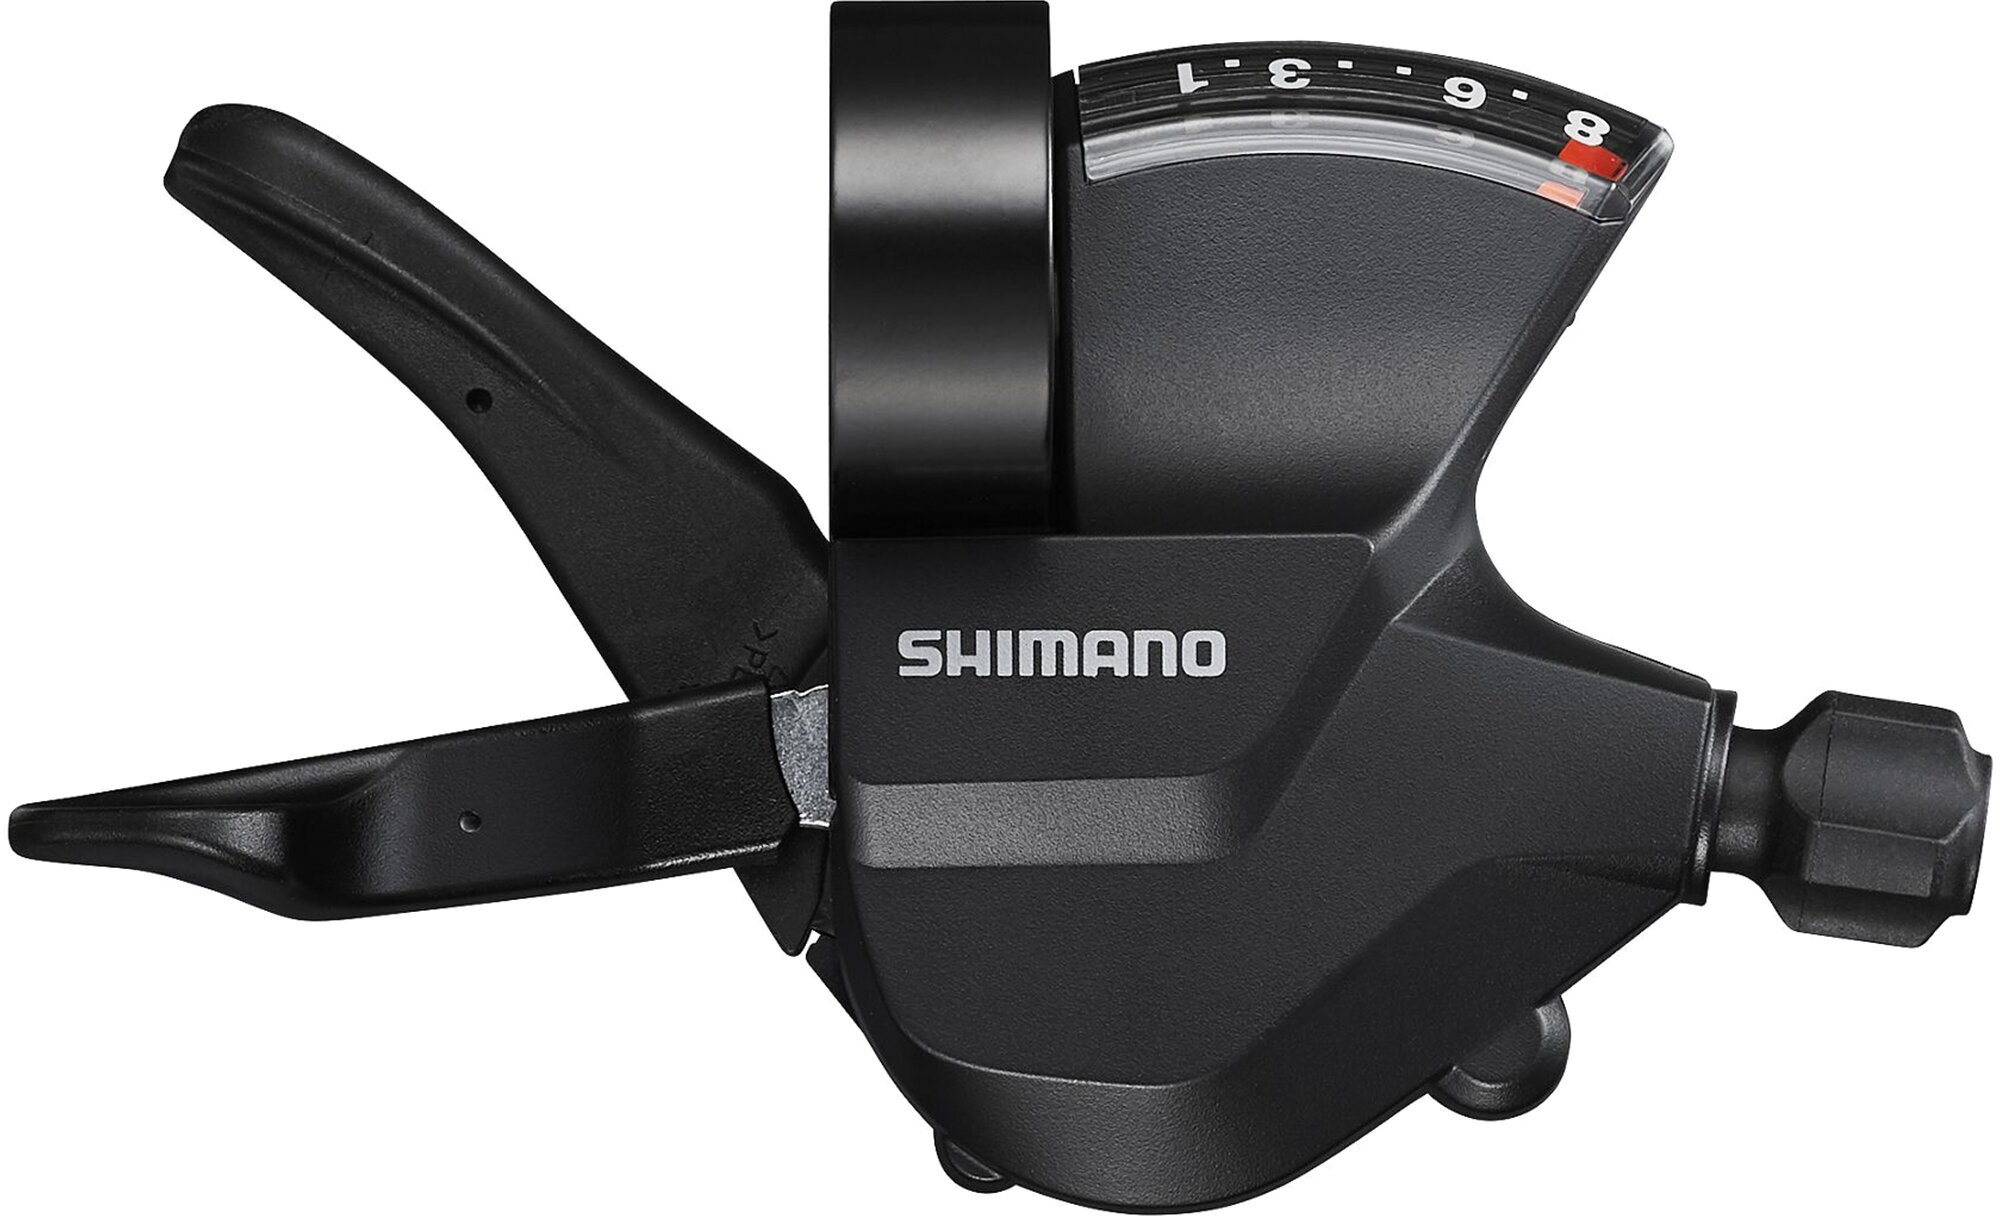 Шифтер (манетка) Shimano SL-M315, серия Altus, 8 скоростей, под правую руку, трос 205 см, черный